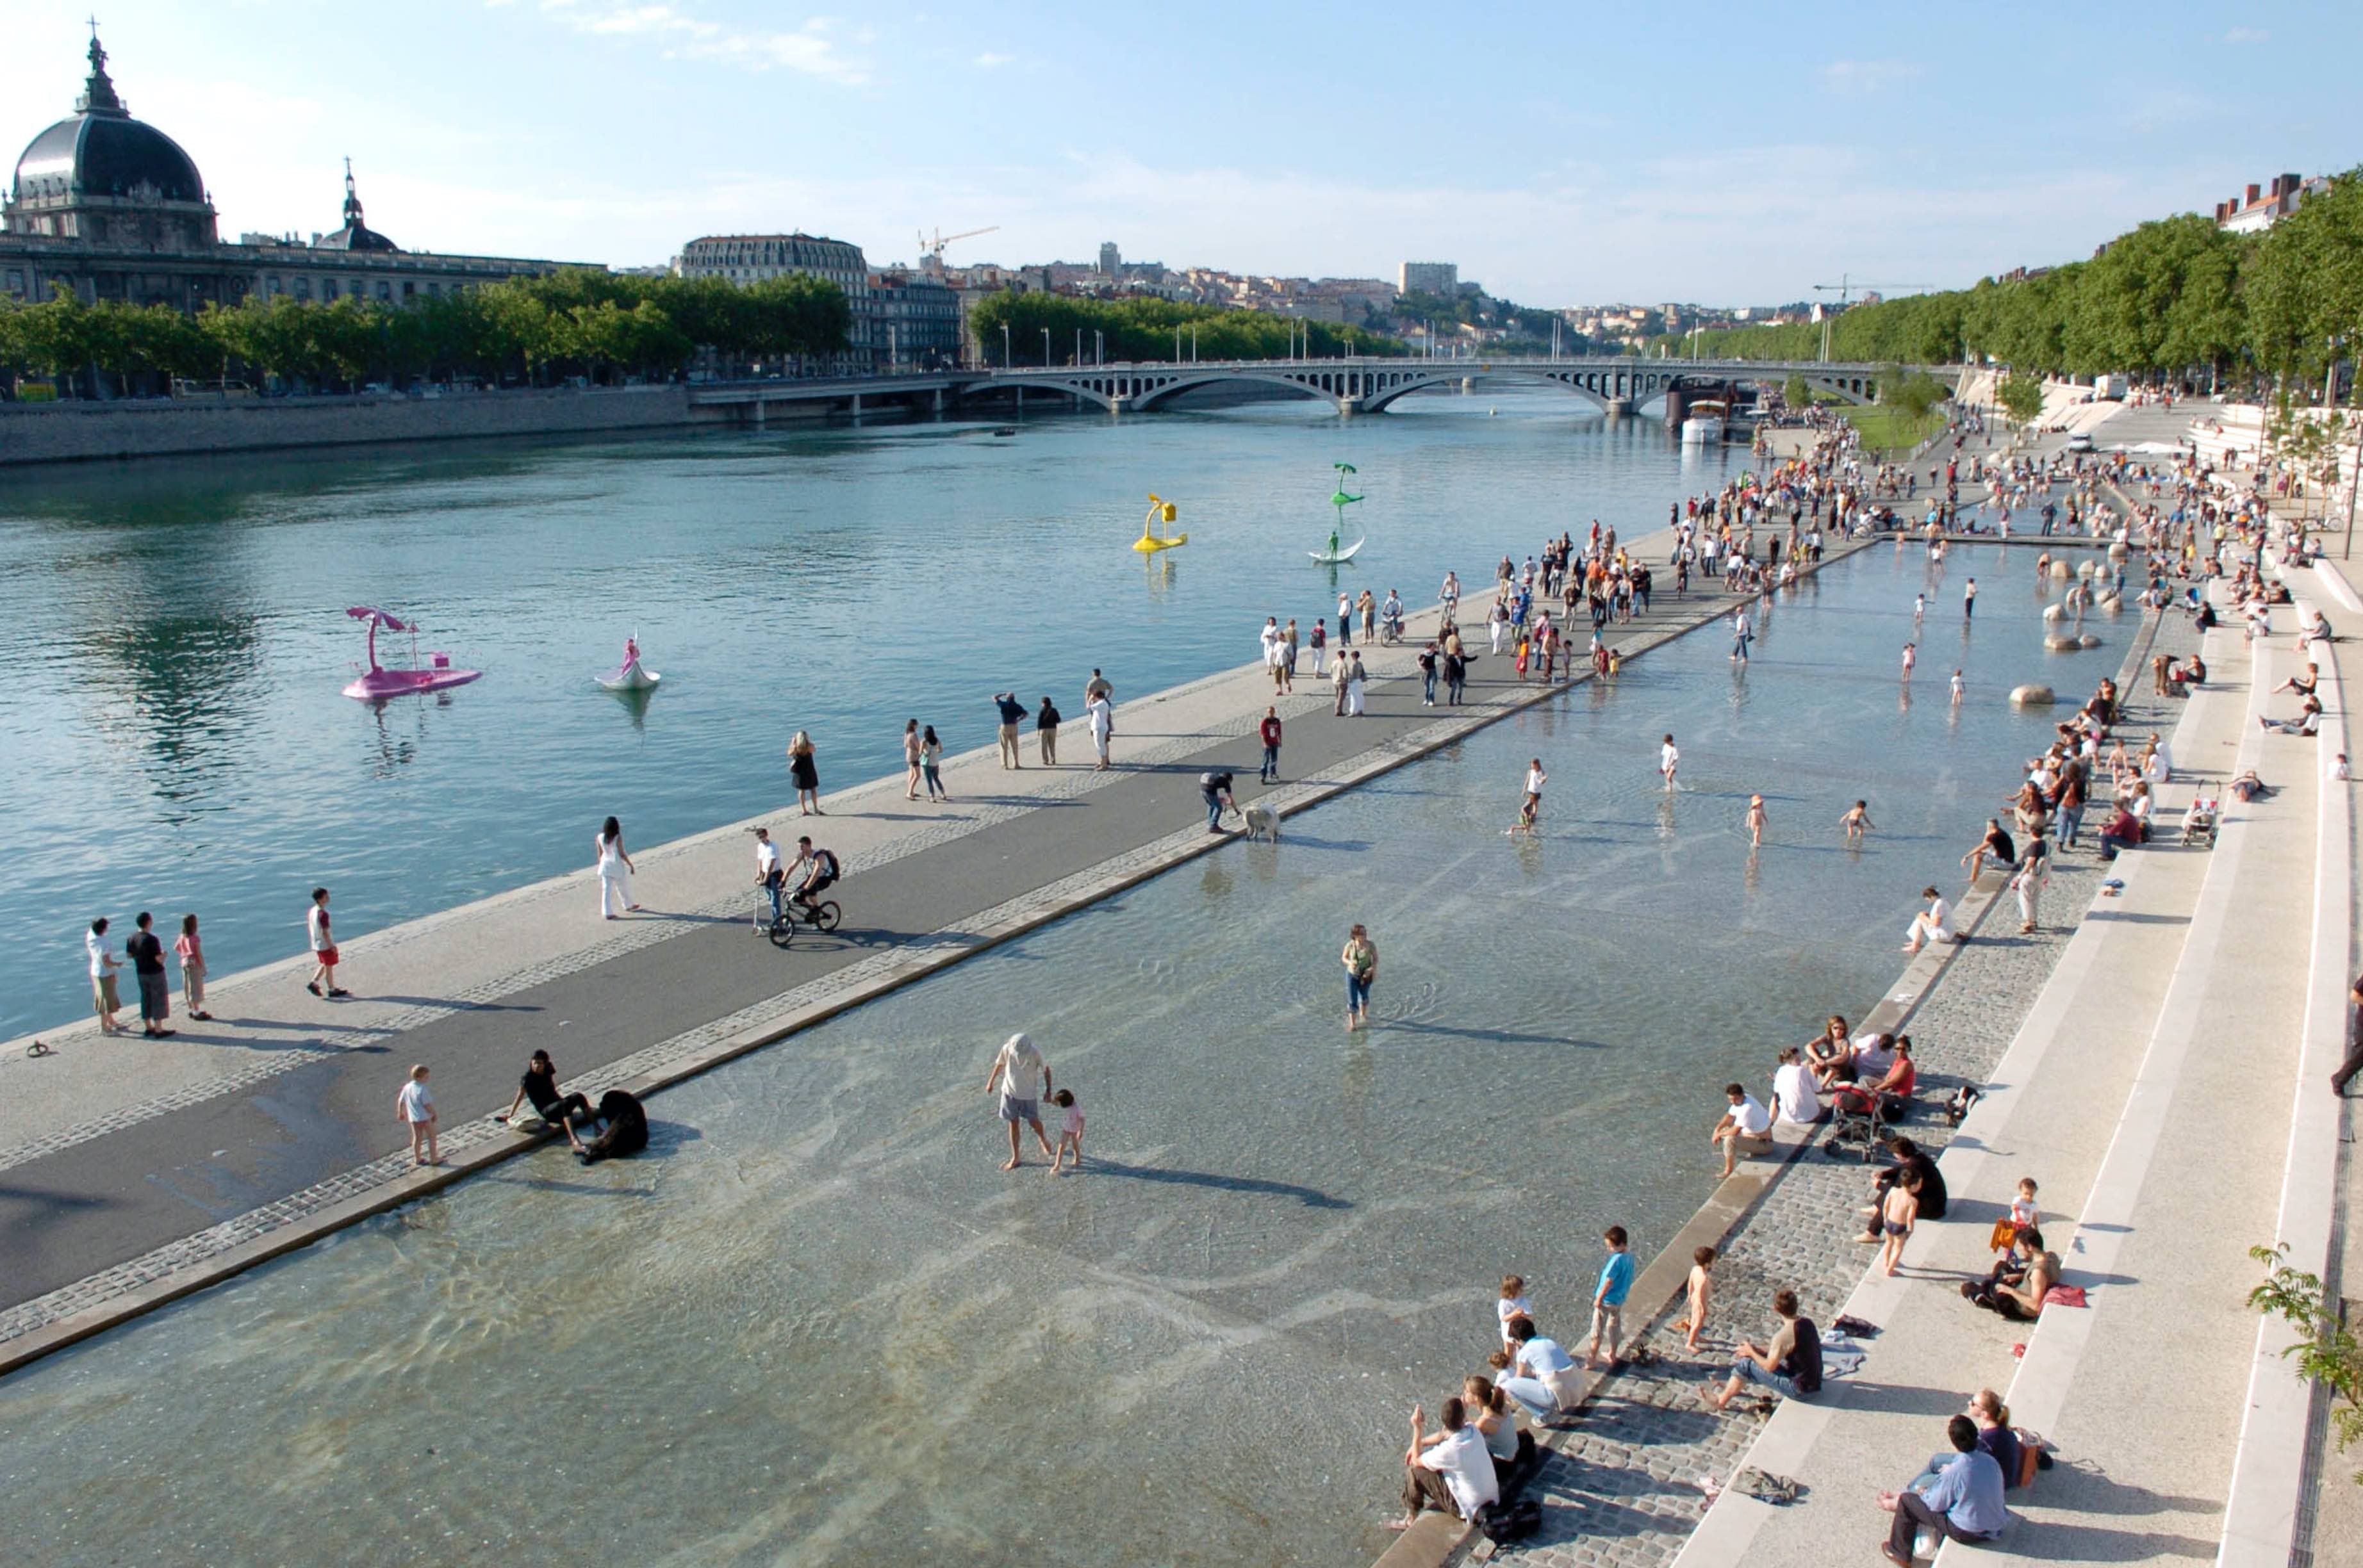 100 villes climatiquement neutres d'ici 2030 : Lyon et Grenoble font partie des huit villes françaises retenues